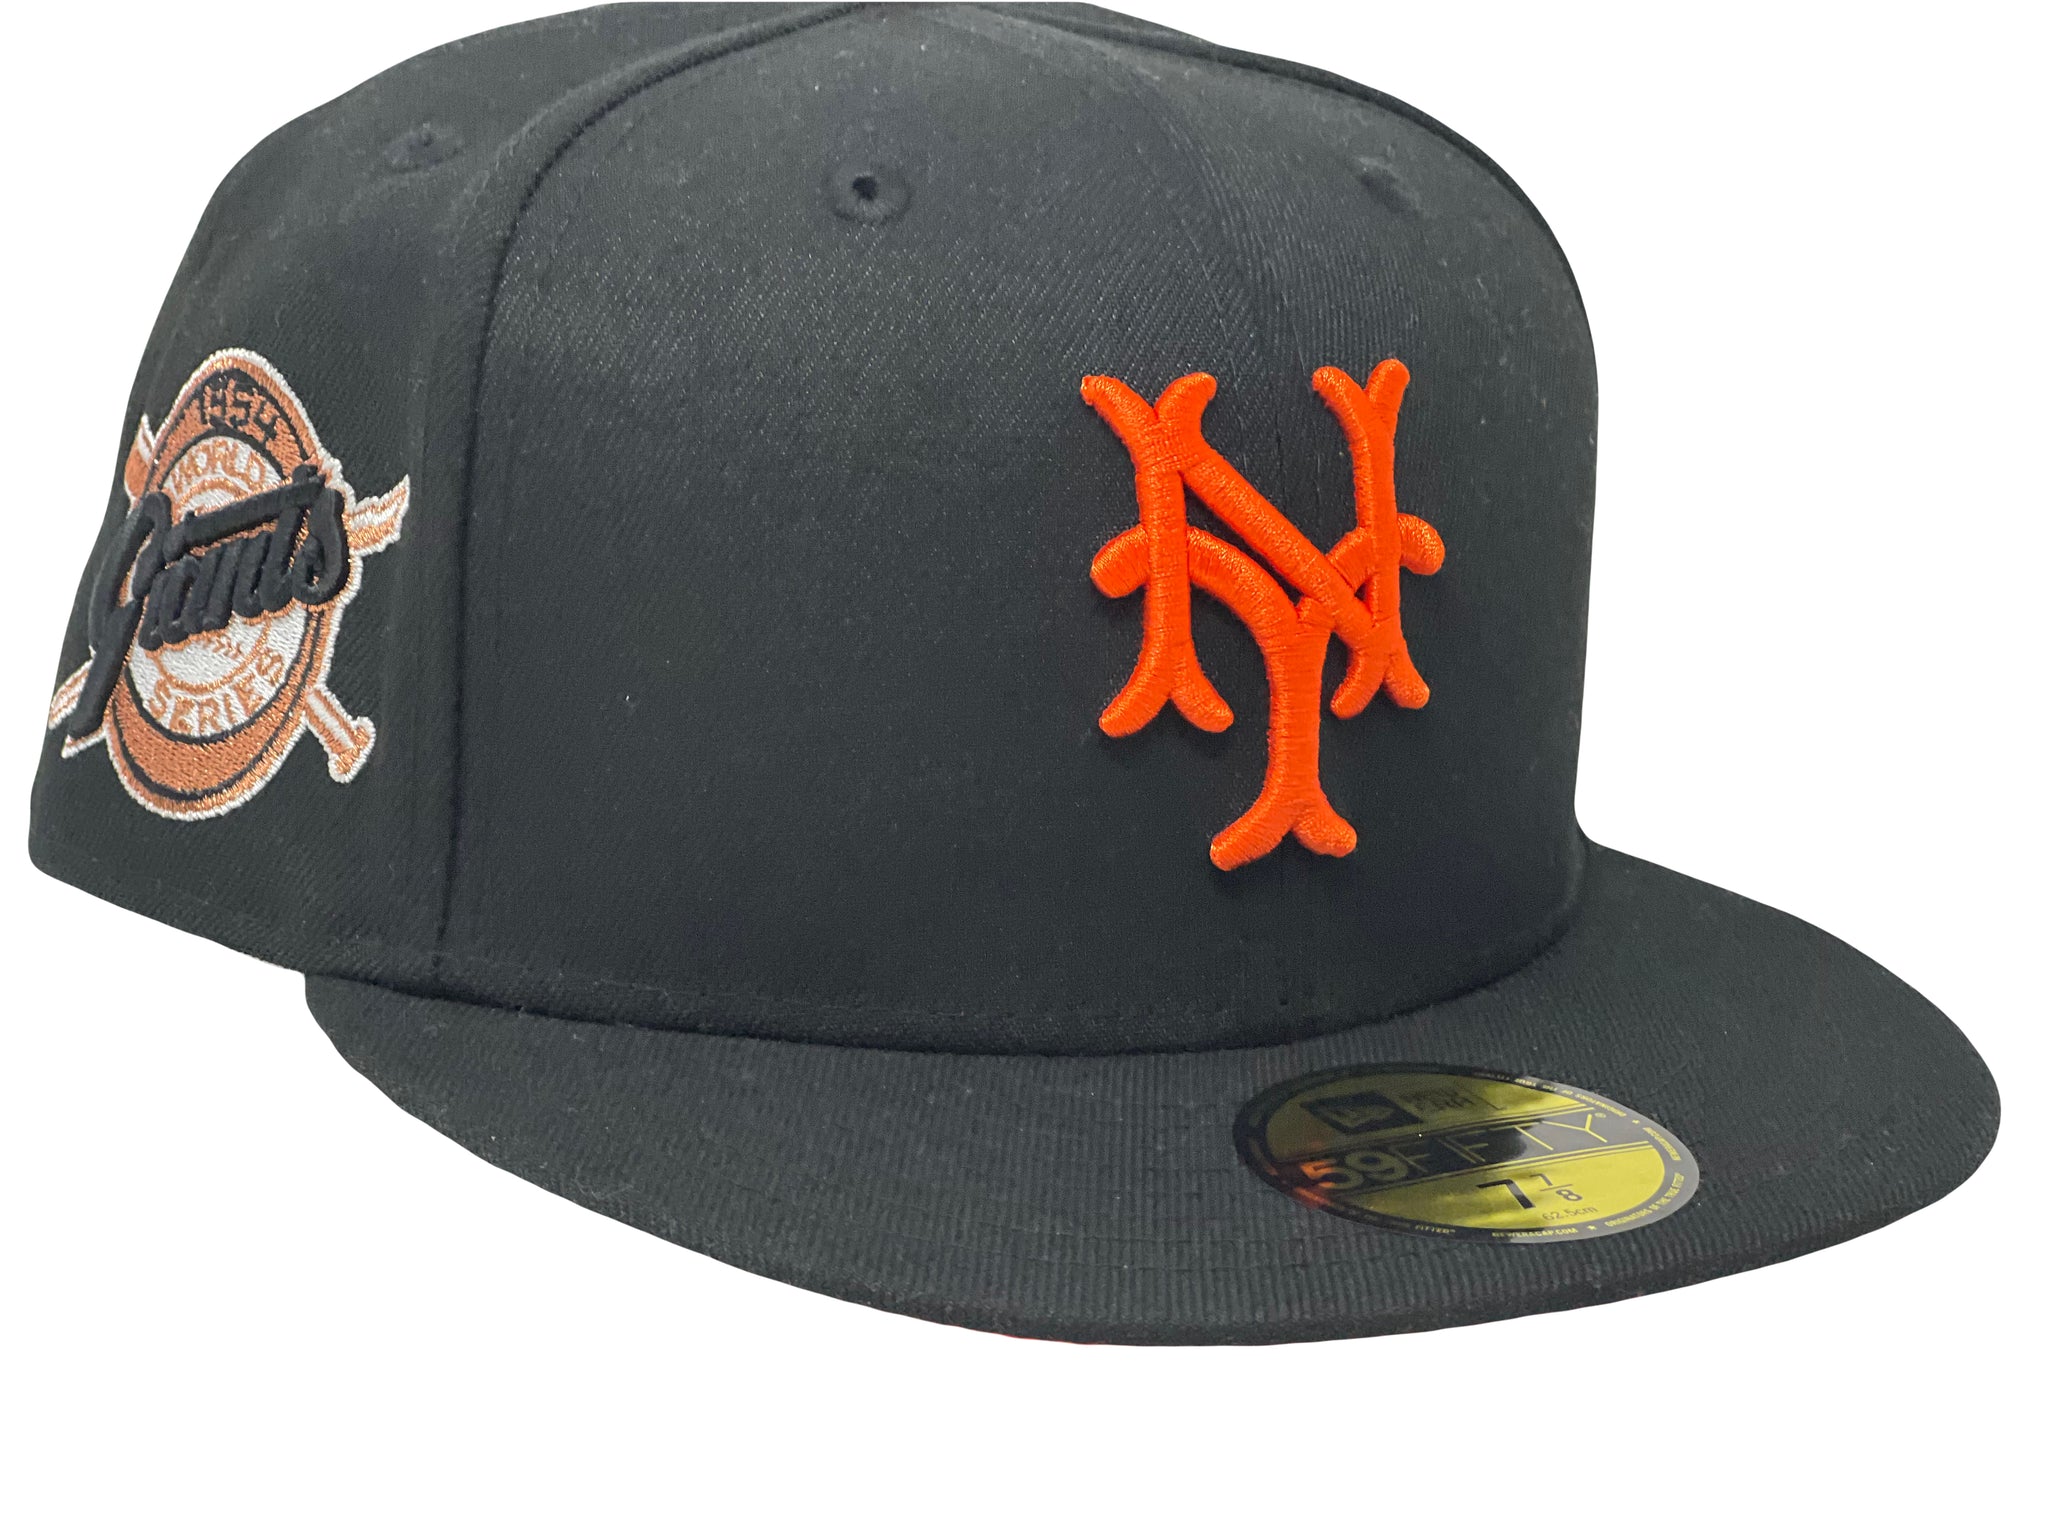 new york giants baseball hat